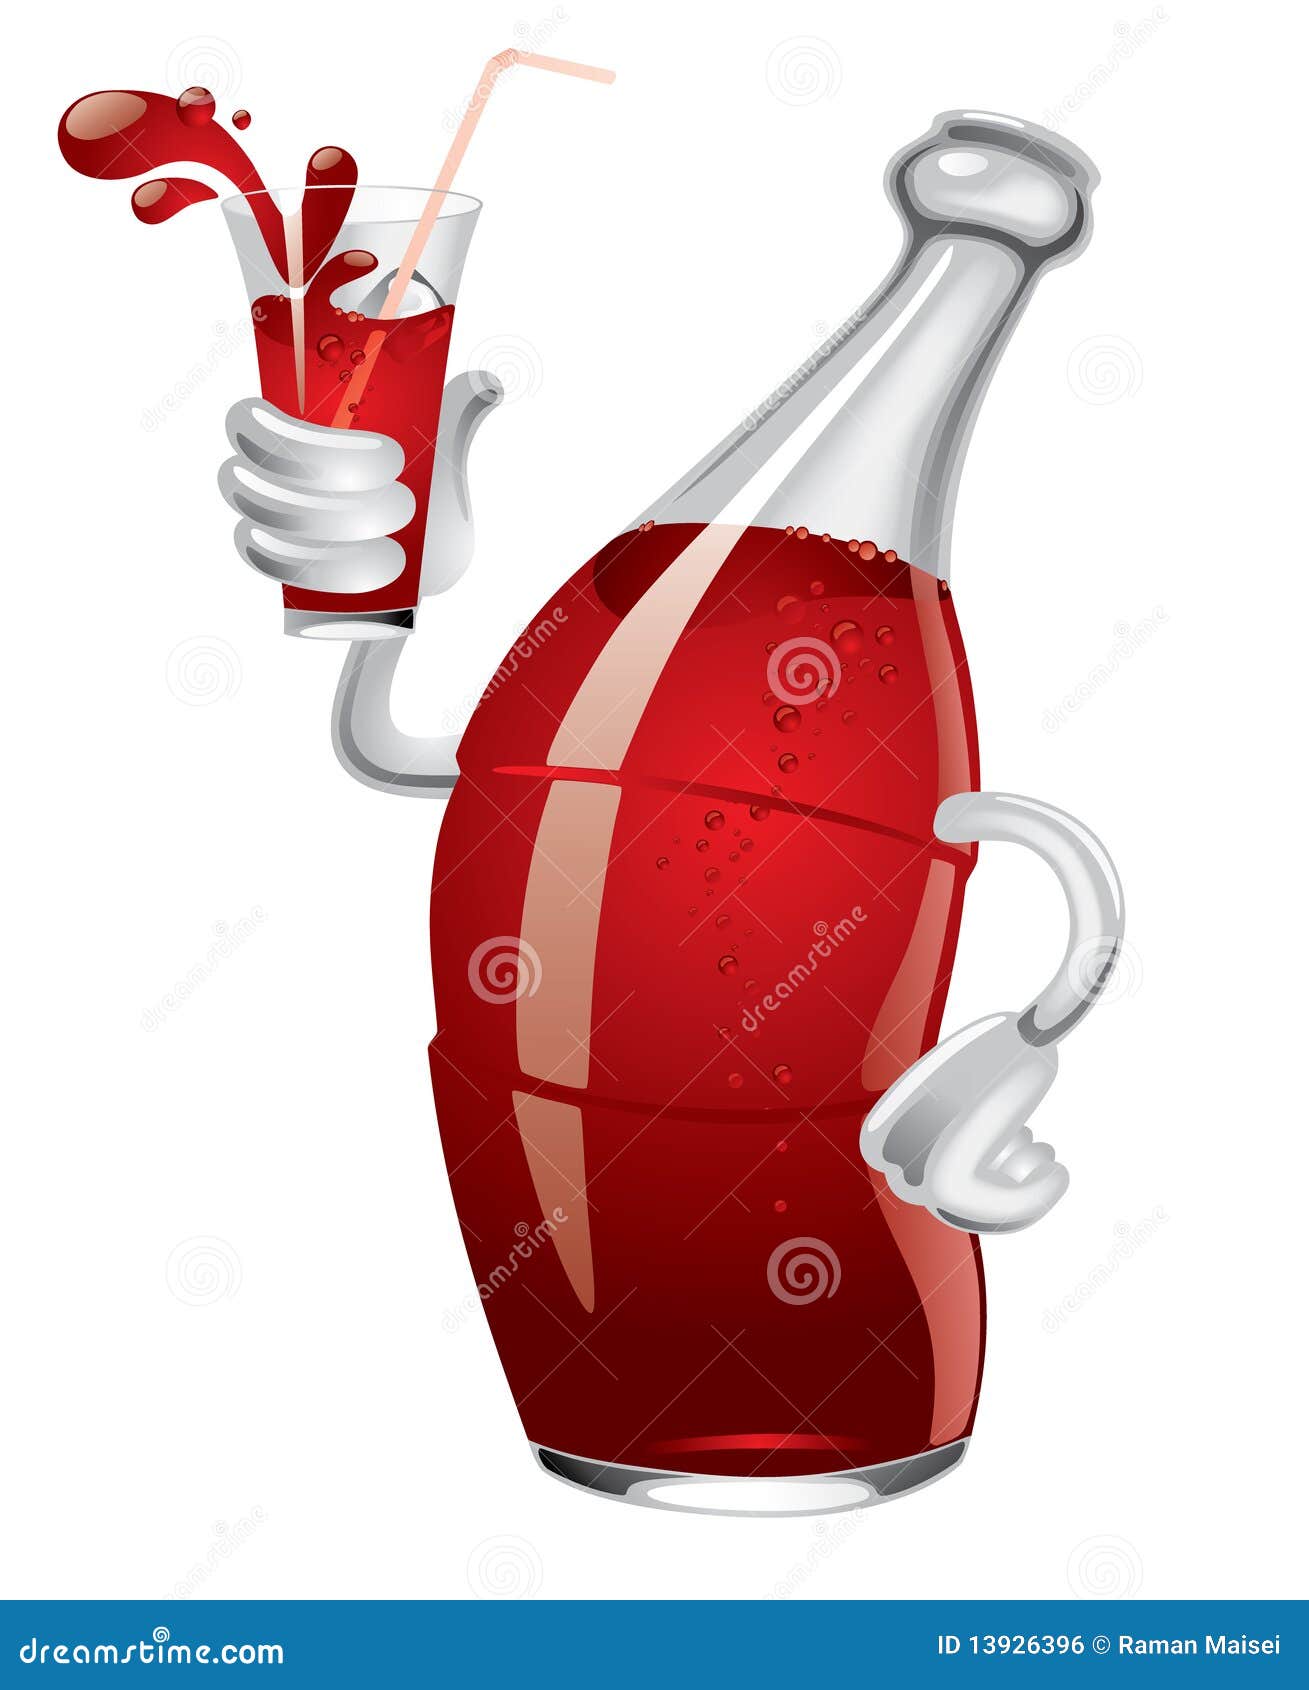 Soda Bottle Royalty Free Stock Image - Image: 13926396